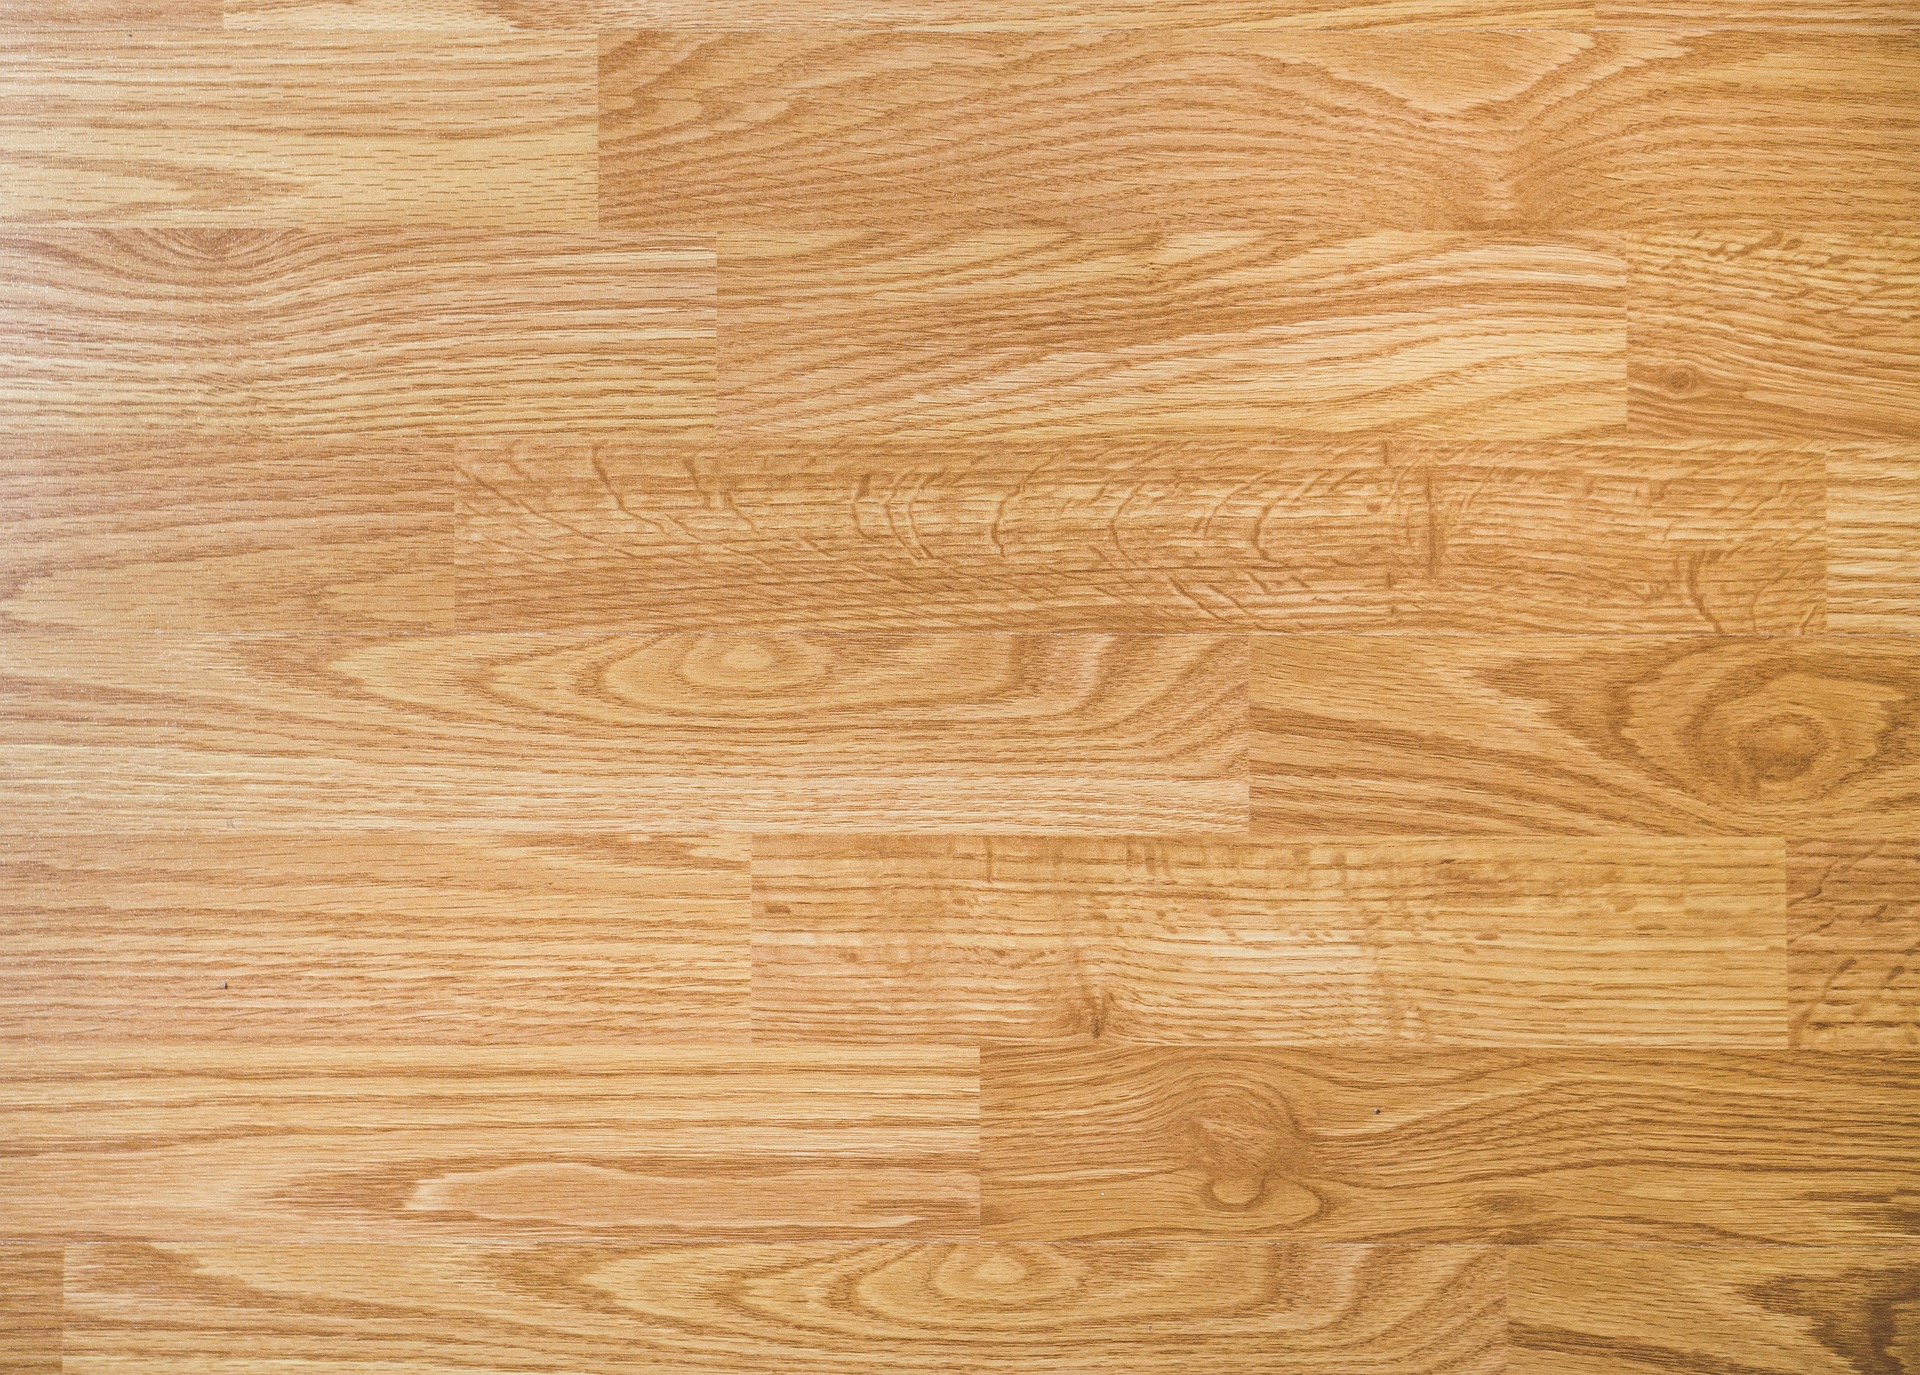 Flooring Wood Floor Texture